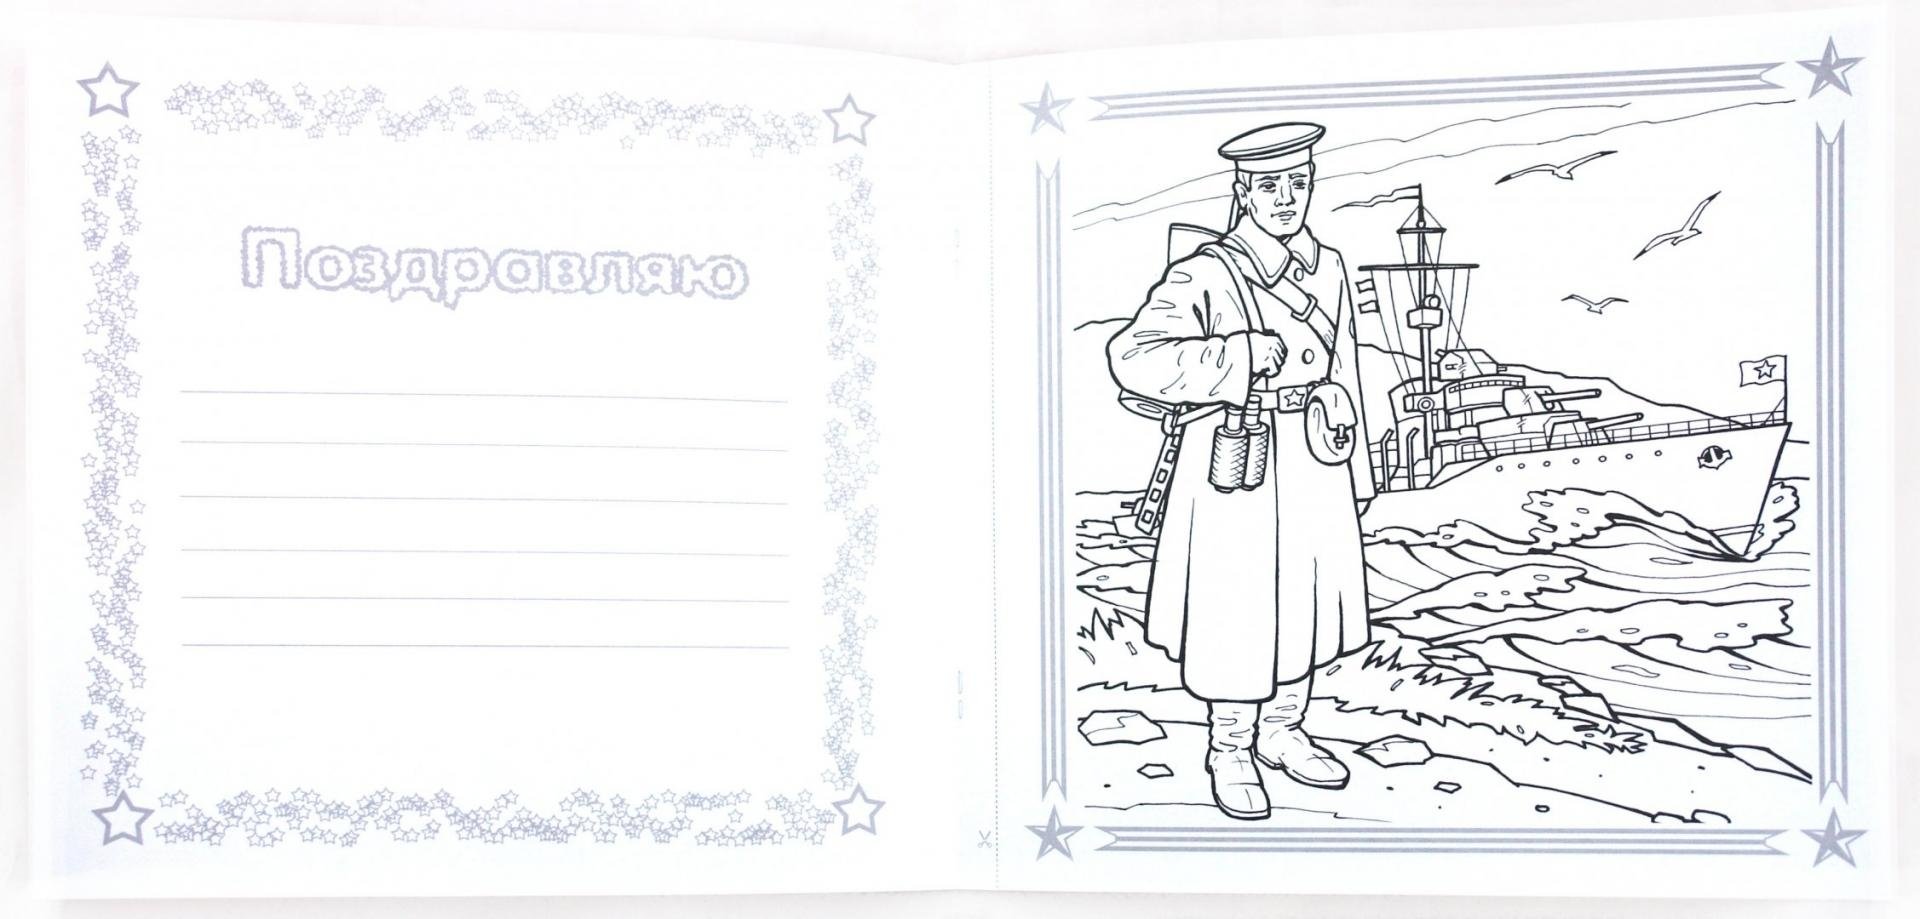 Exquisite Leningrad war coloring page